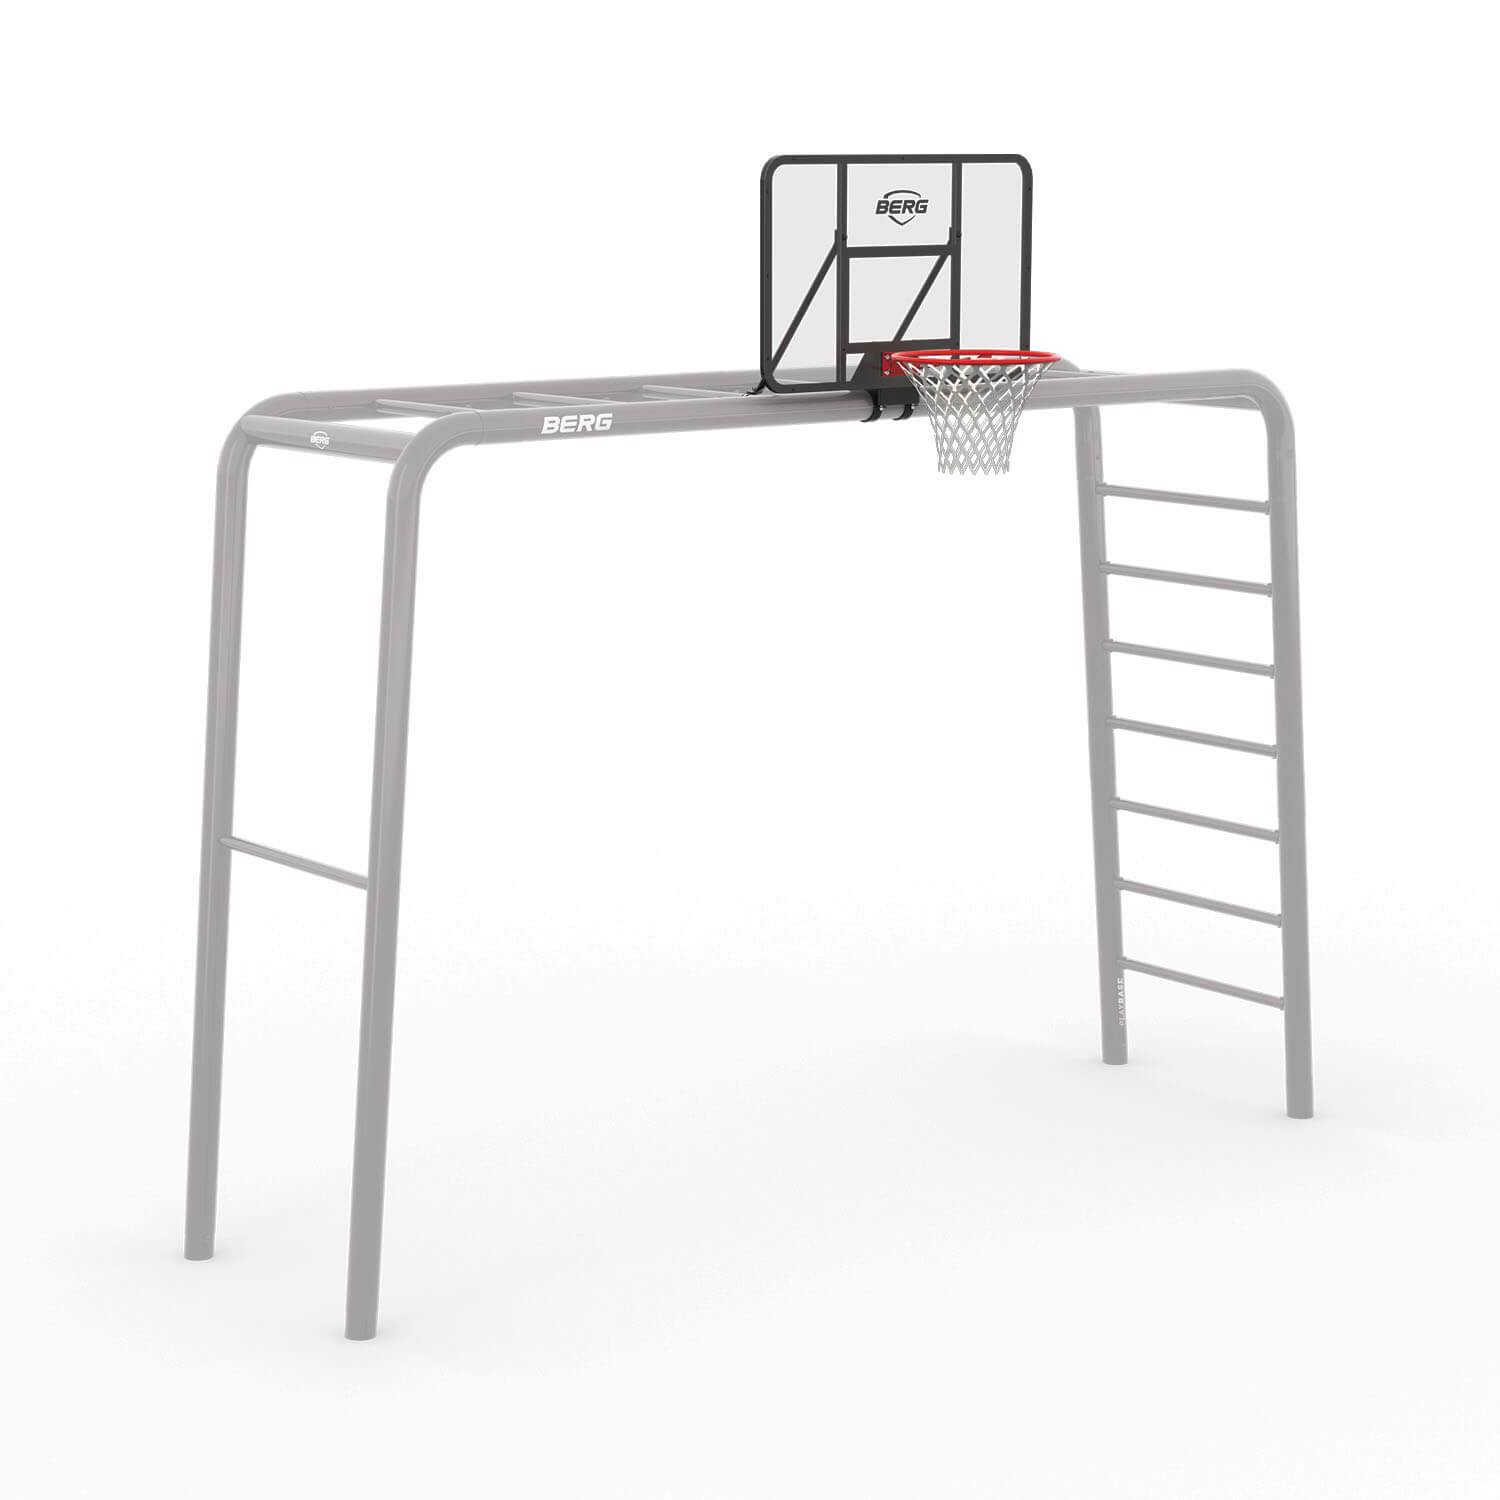 BERG Playbase Basketball Hoop